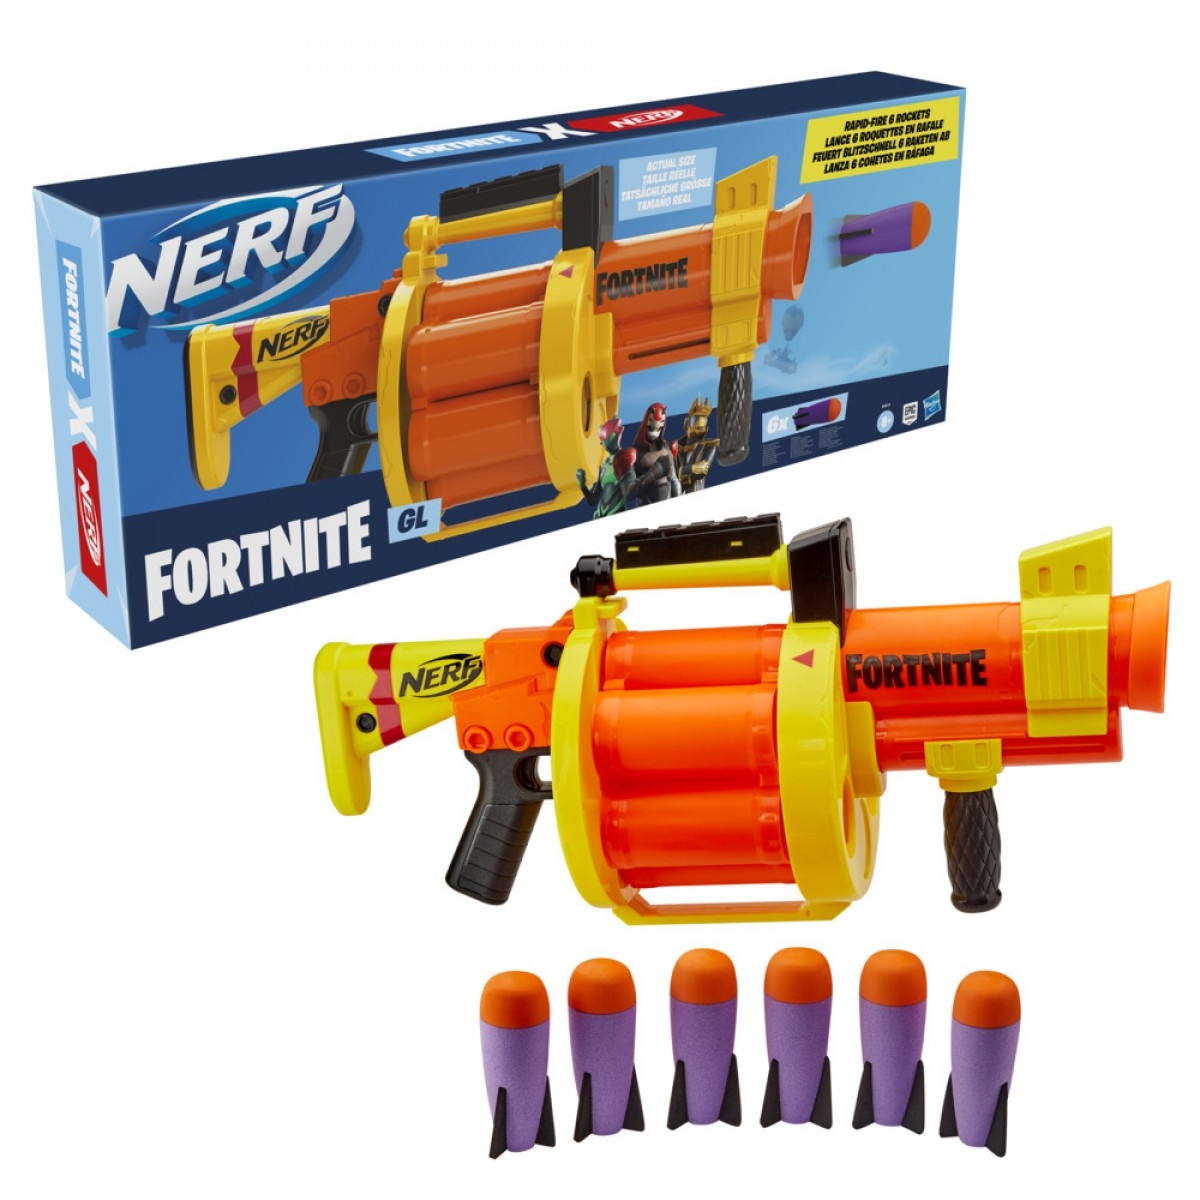 Nerf Fortnite HR – Blaster Barn